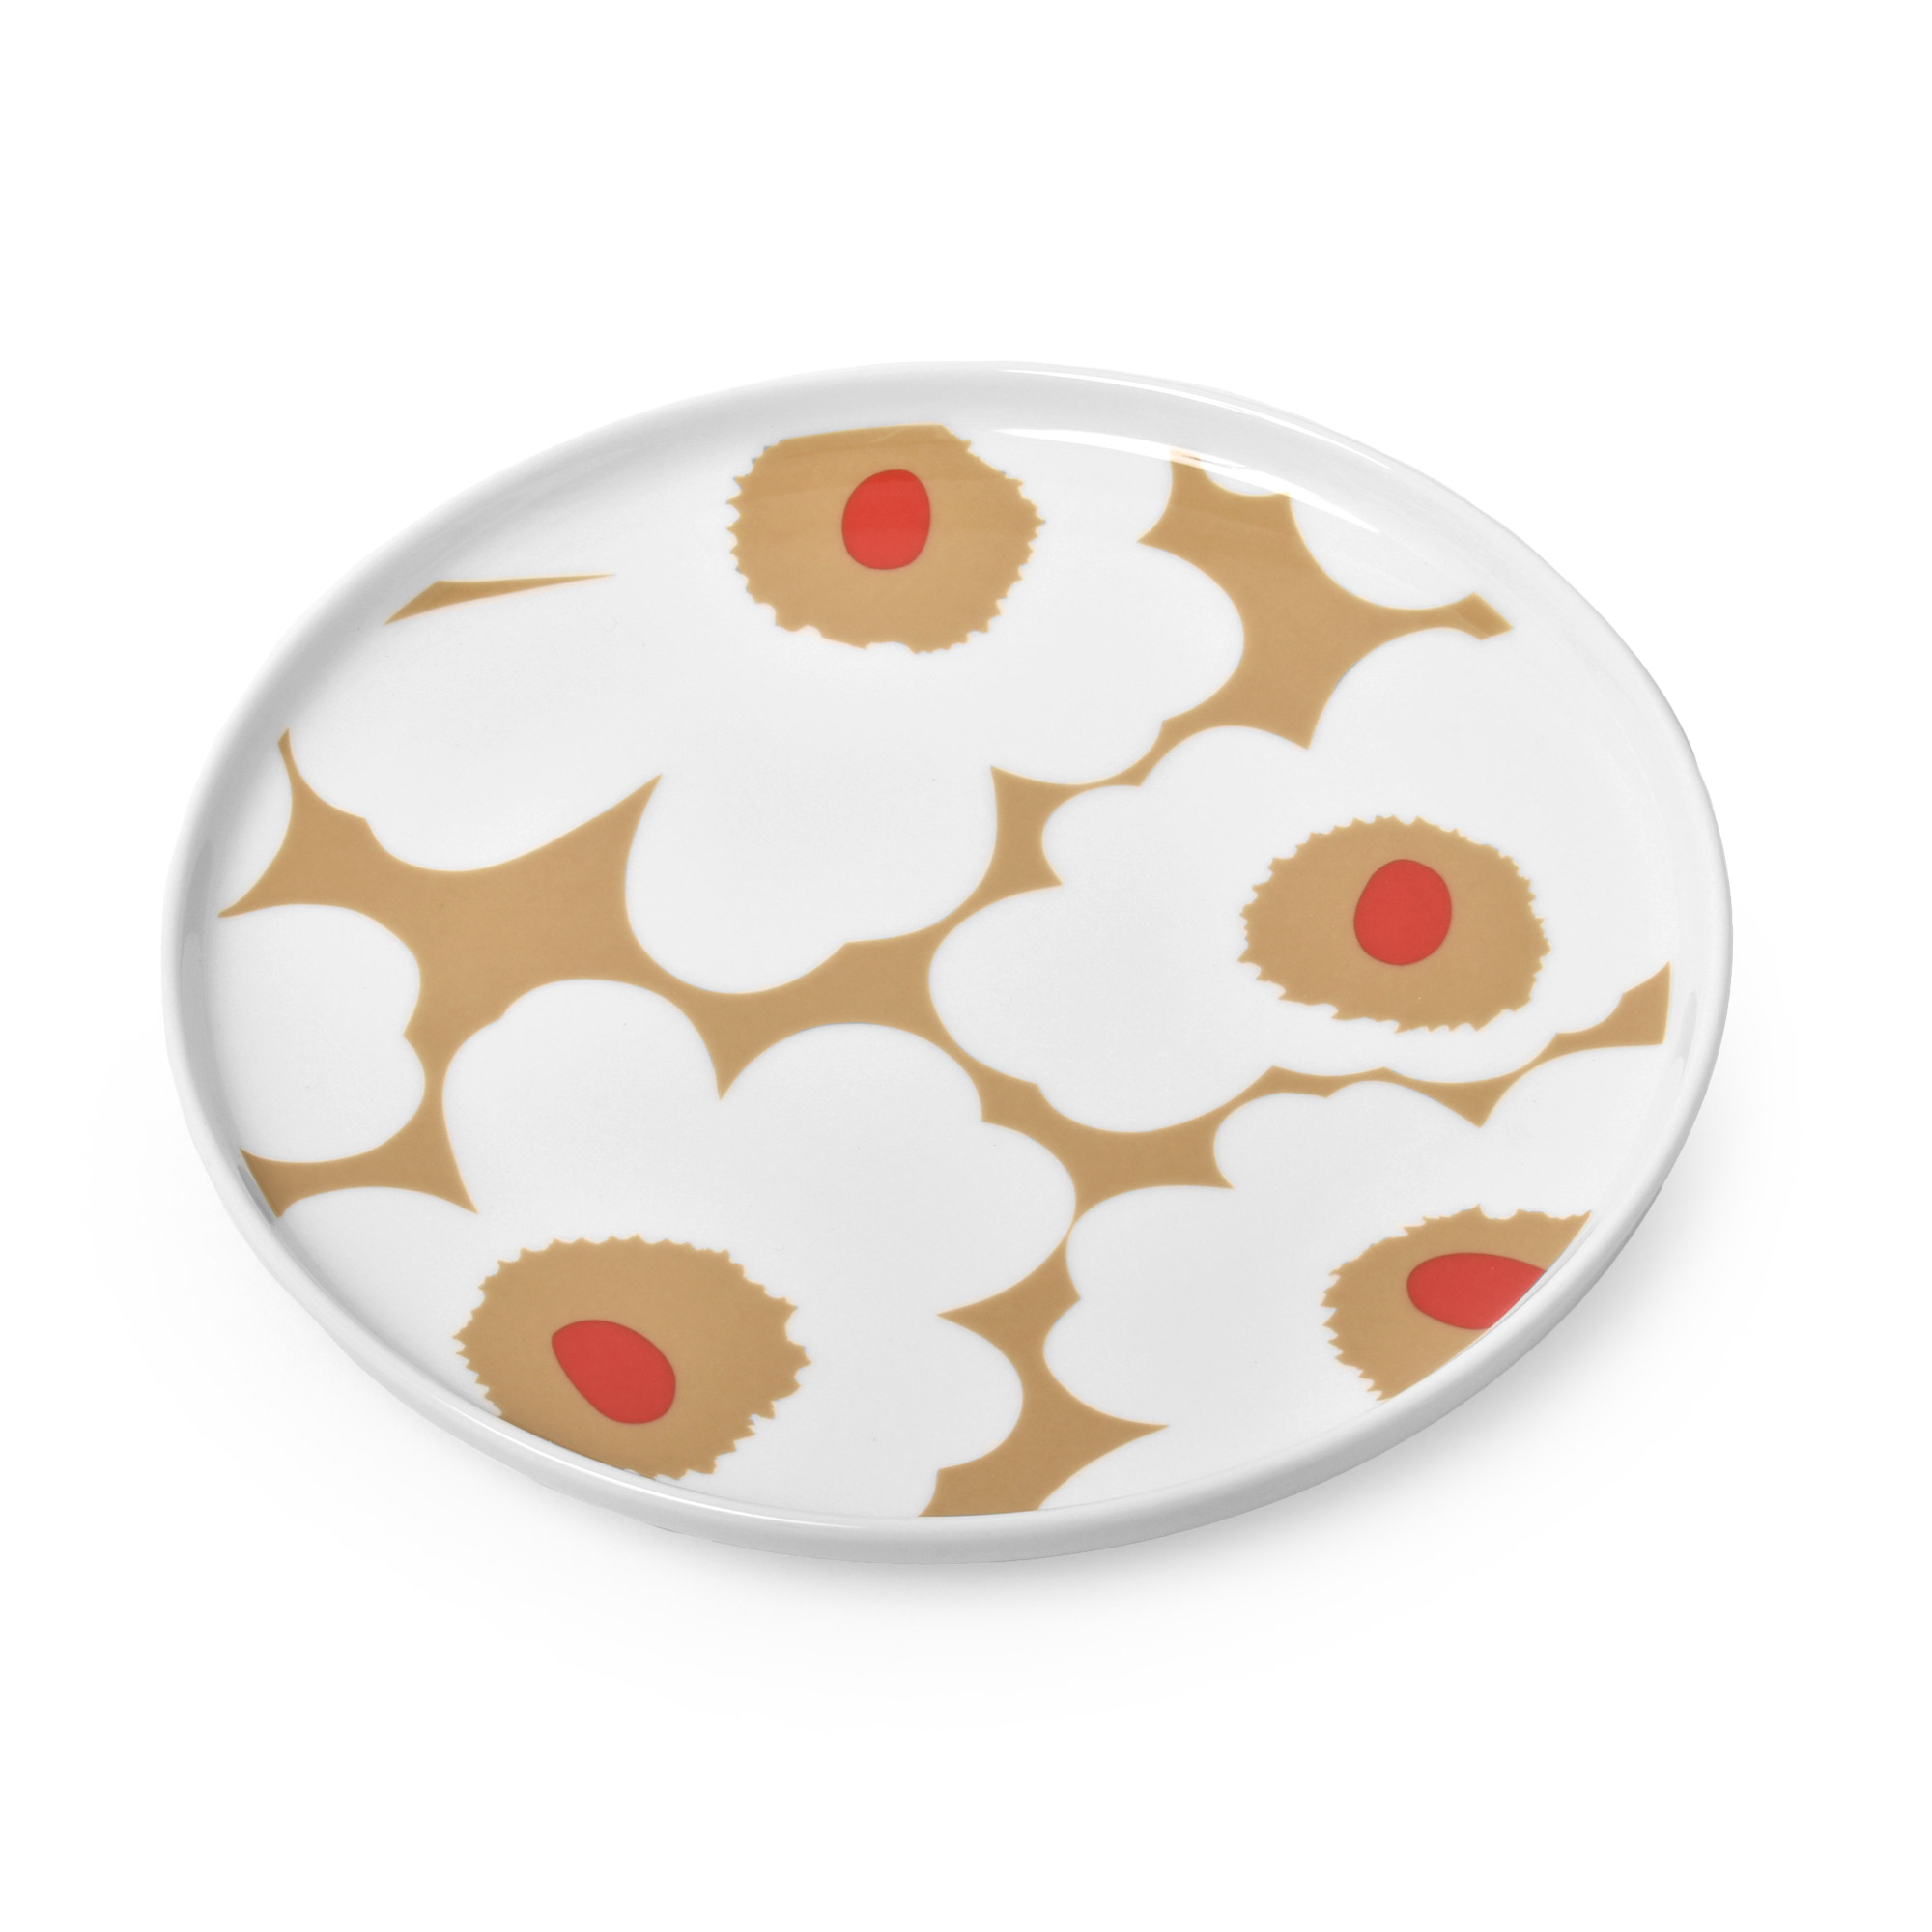 マリメッコ プレート 皿 20cm MARIMEKKO PLATE ウニッコ キッチン 食卓 食器 丸皿 かわいい おしゃれ デザイン 北欧 ブランド  シンプル 花柄 食器